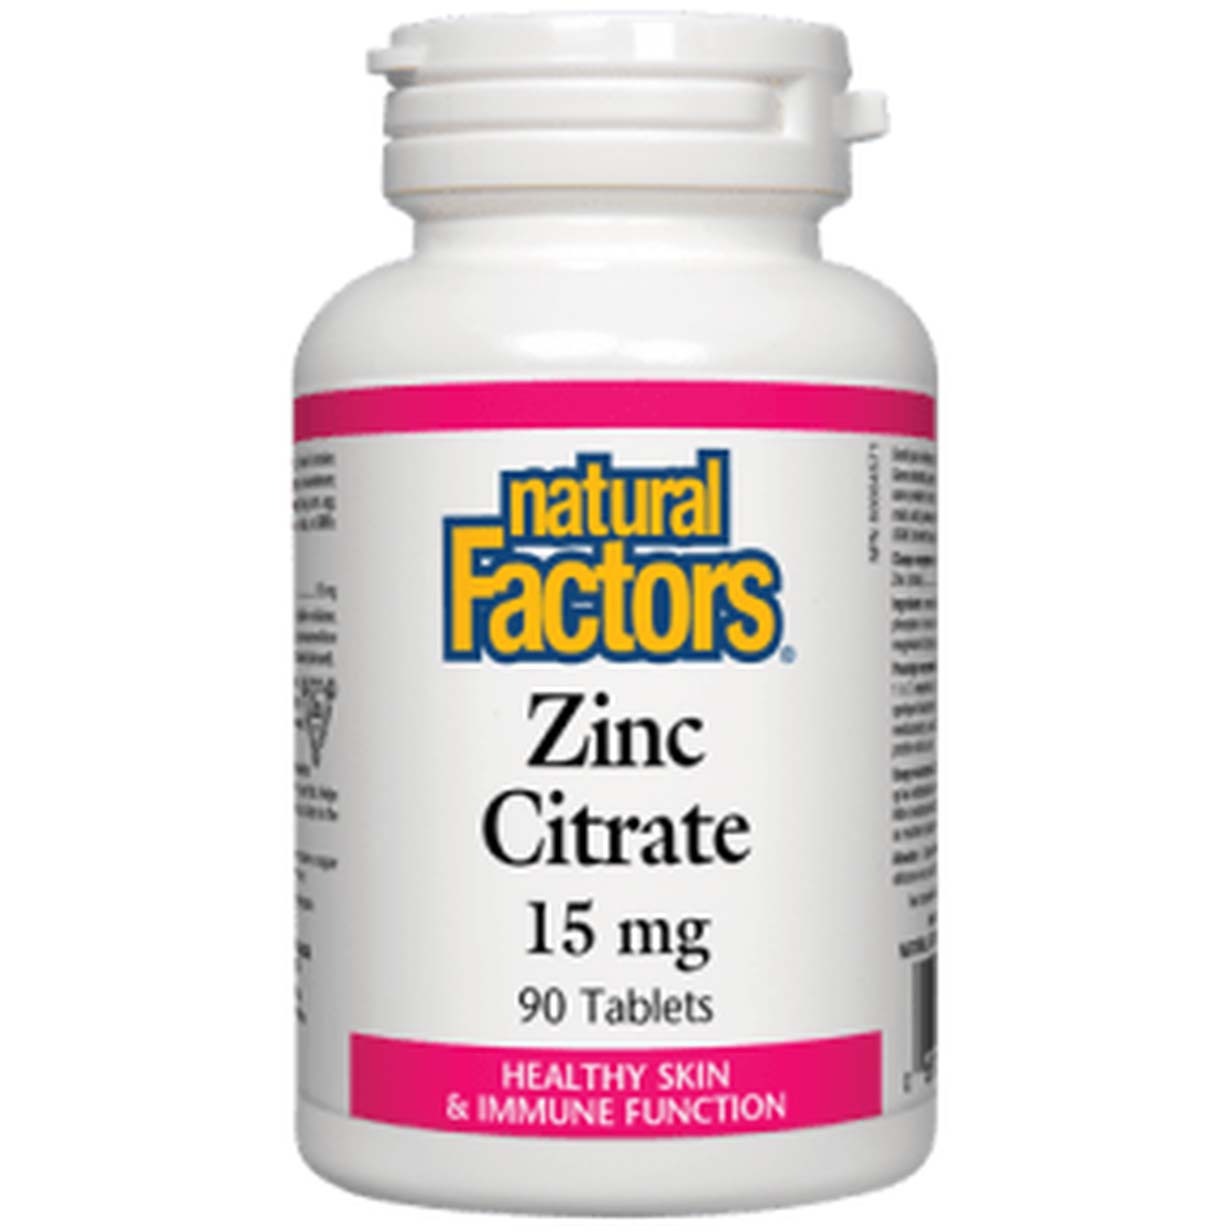 Natural Factors Zinc Citrate 90 Tablets 15 mg